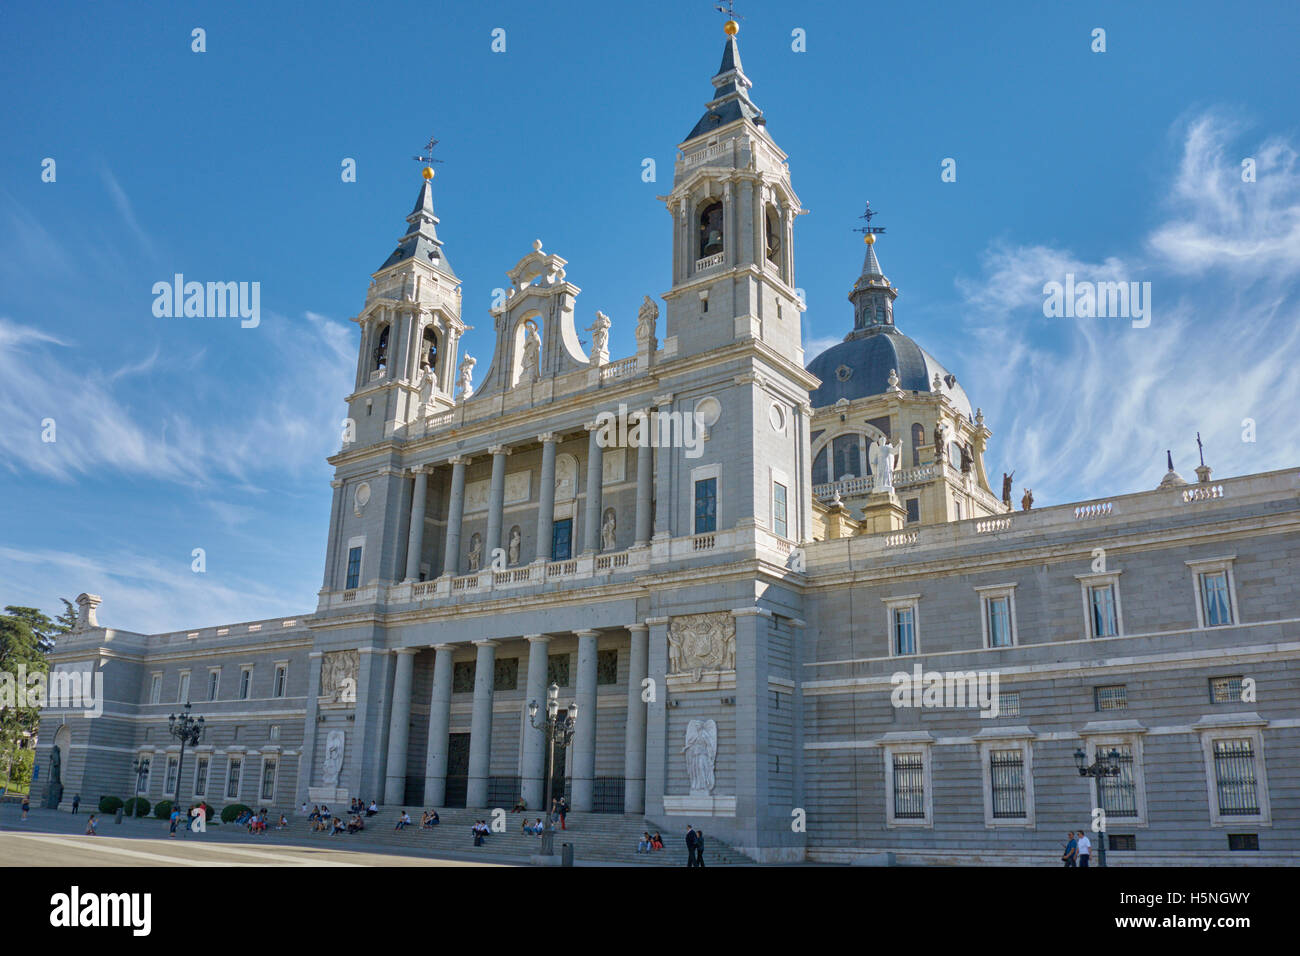 Entrée principale de l'église Santa Maria la Real de la cathédrale de l'Almudena contre le ciel bleu. Madrid. L'Espagne. Banque D'Images